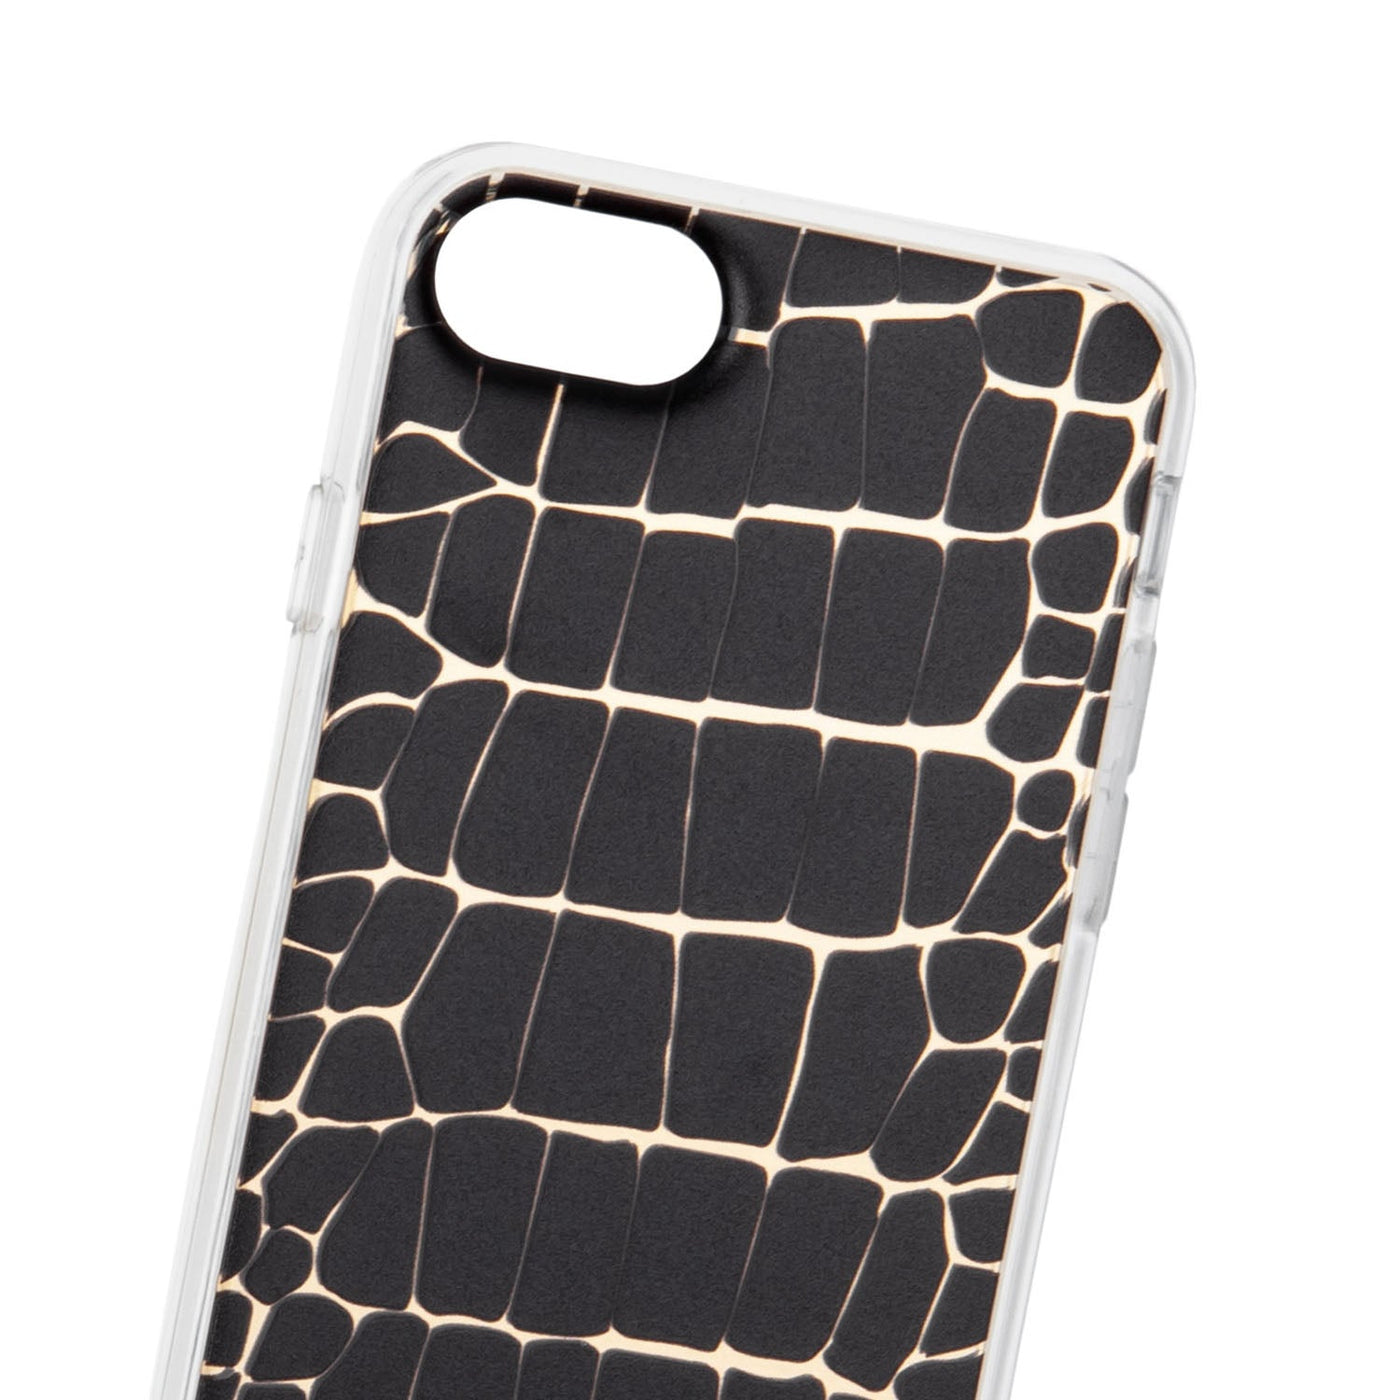 7 / 8 / se smartphone case - accessoires smartphone #couleur_noir